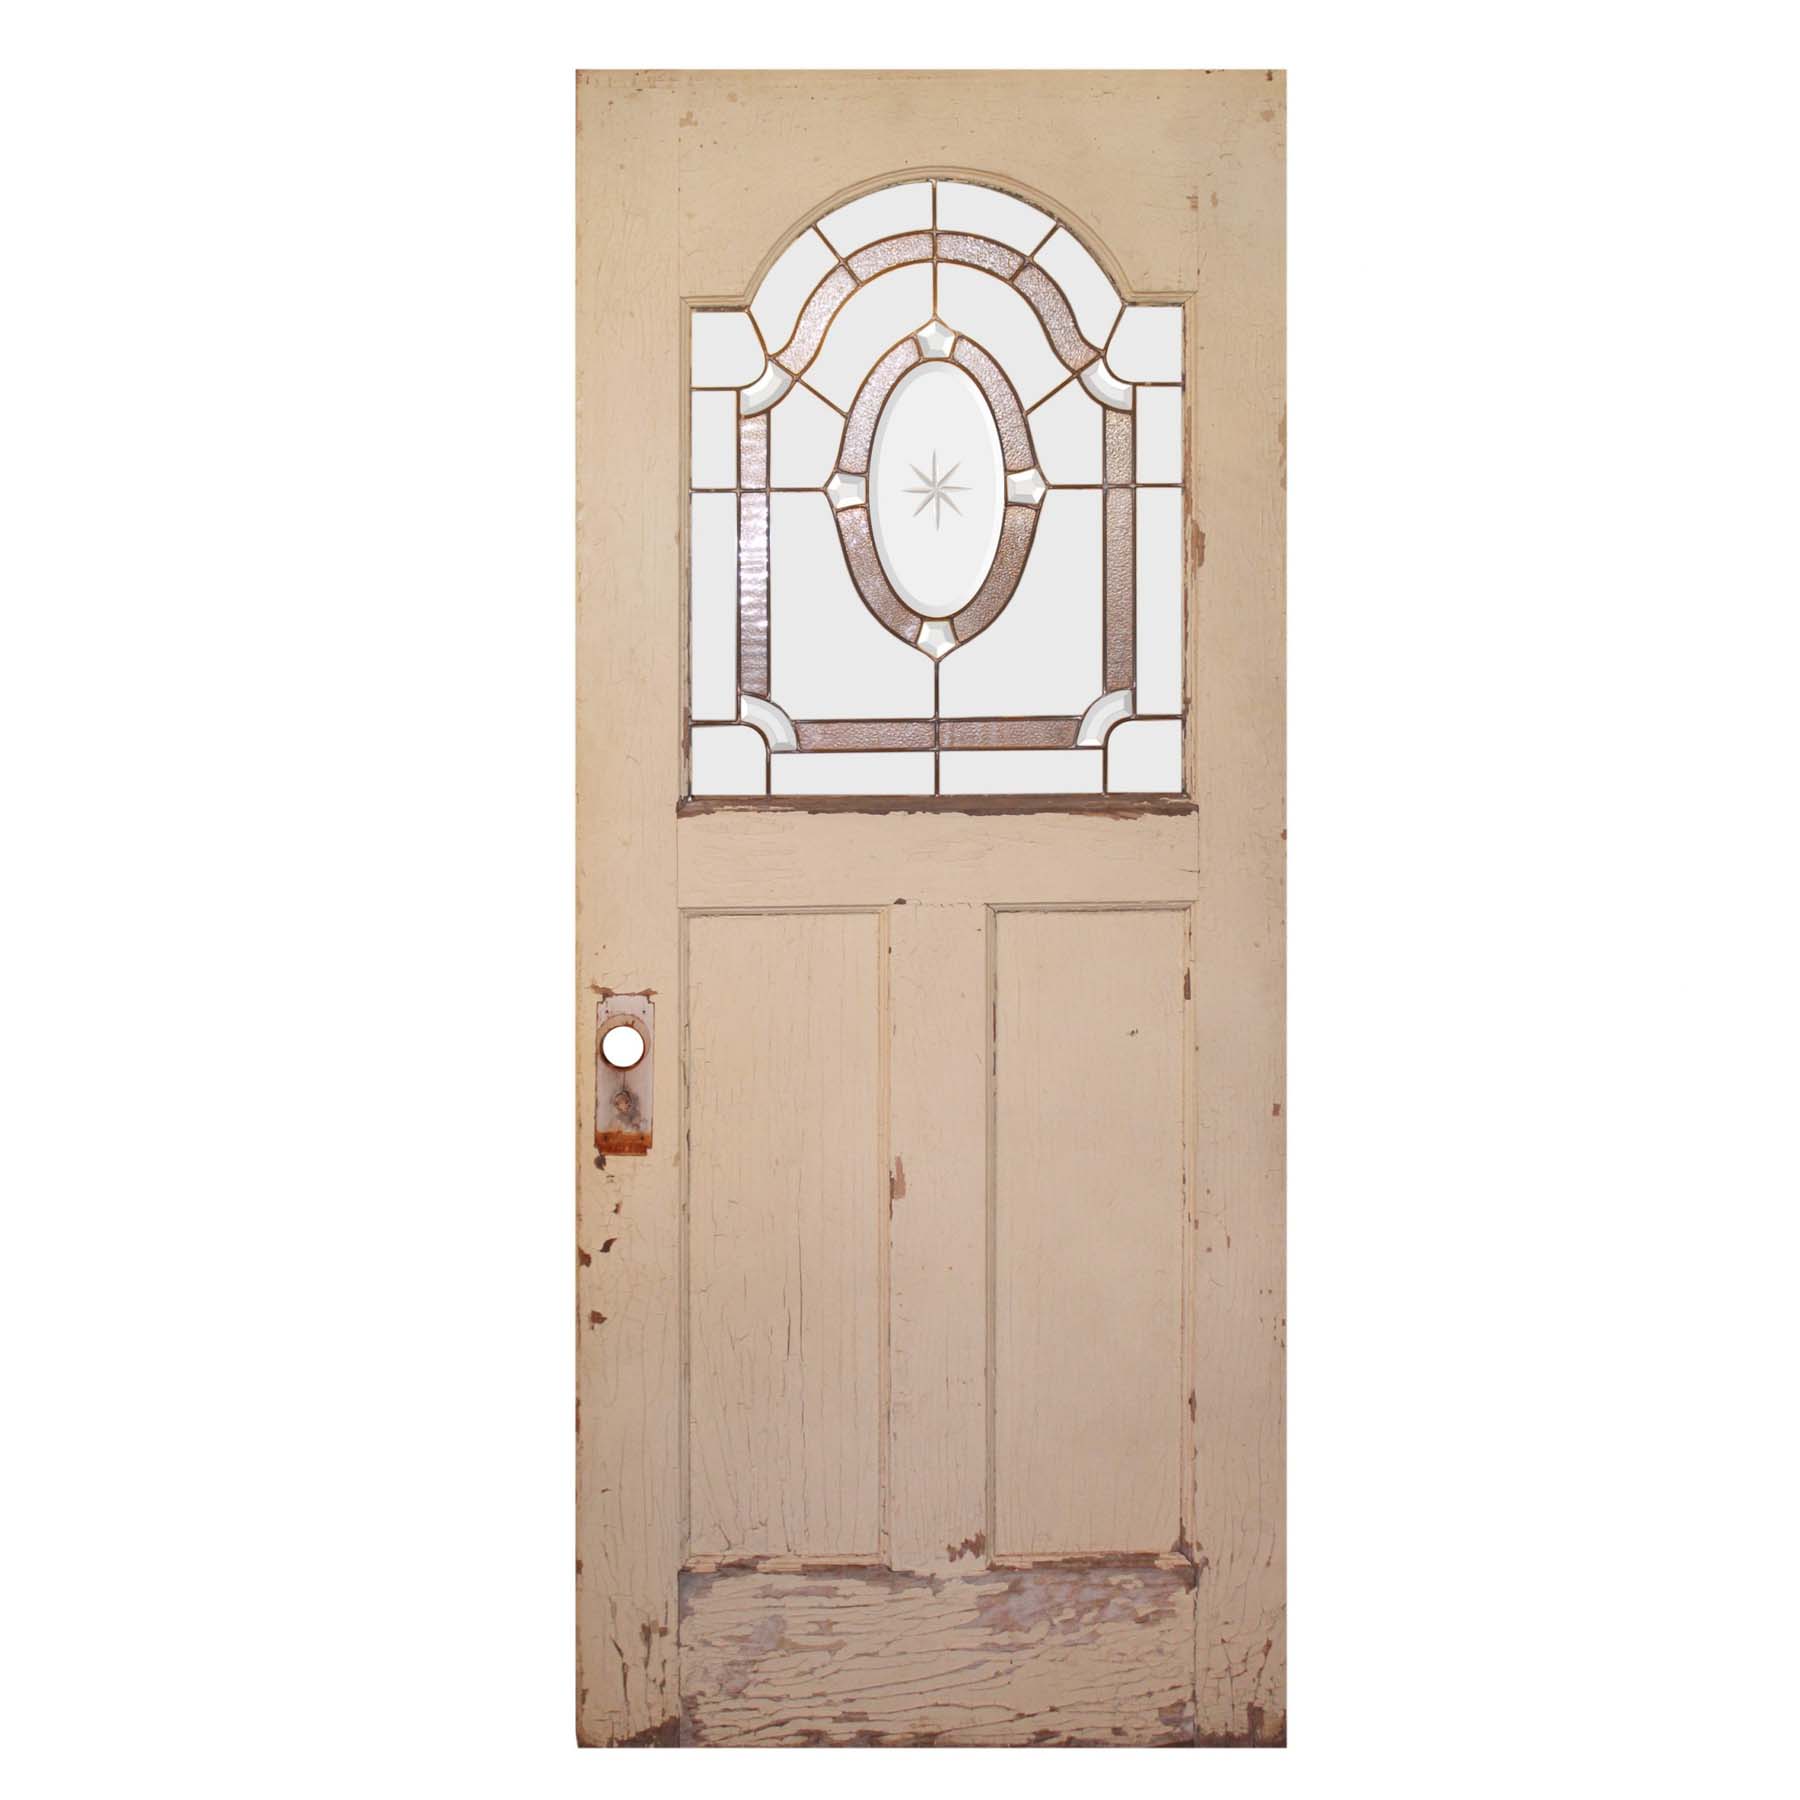 Reclaimed 34" Door with Leaded Glass Window-0